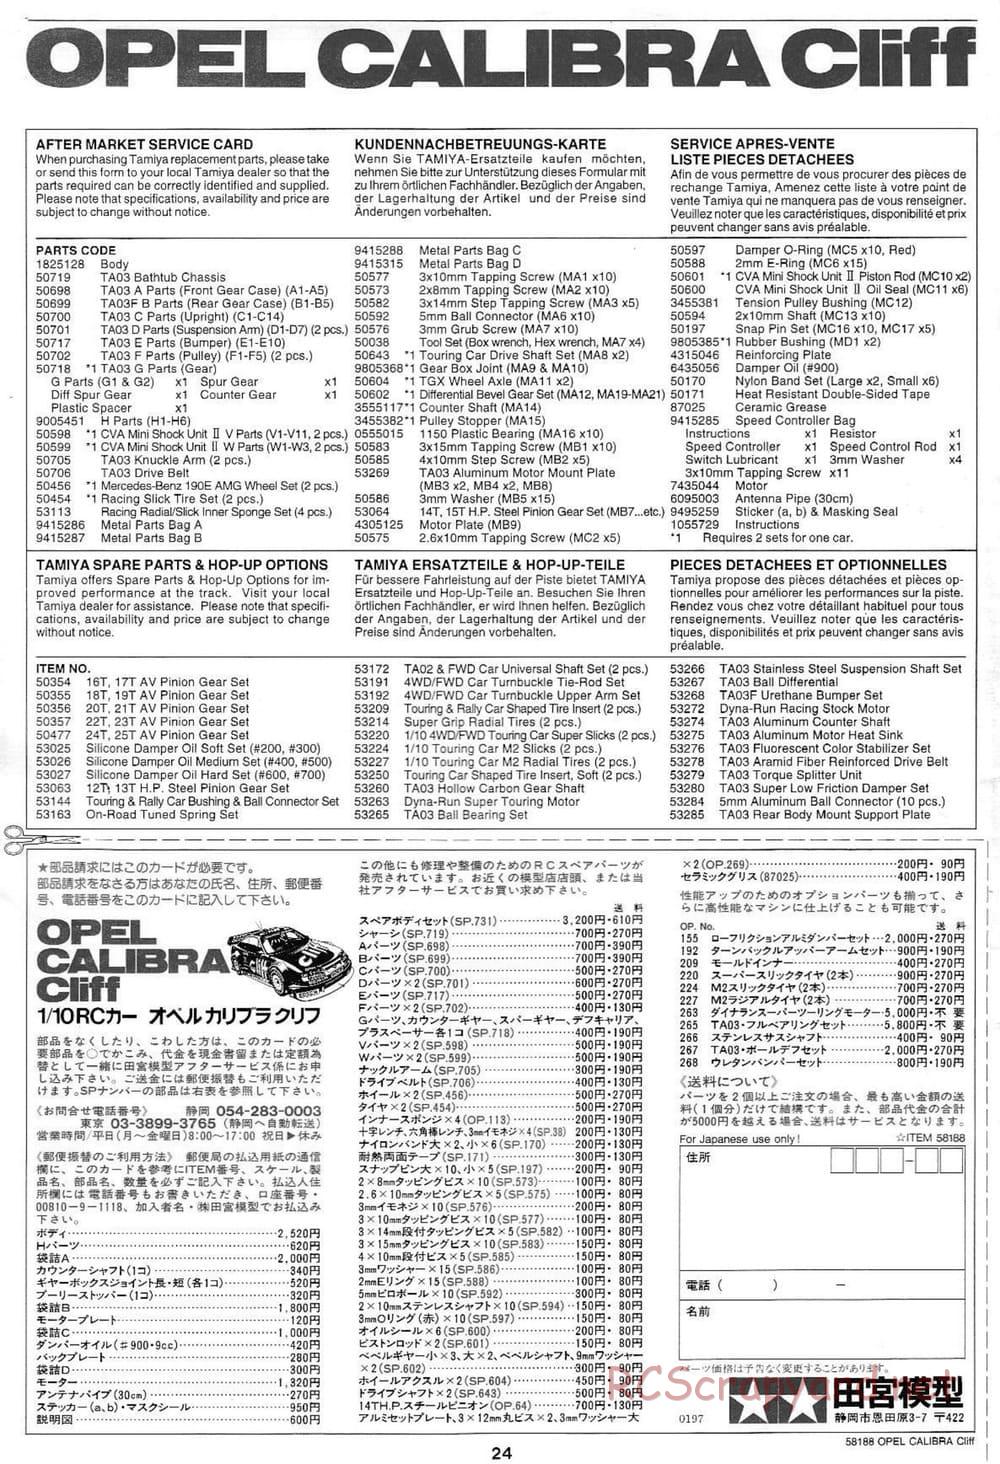 Tamiya - Opel Calibra Cliff - TA-03F Chassis - Manual - Page 24